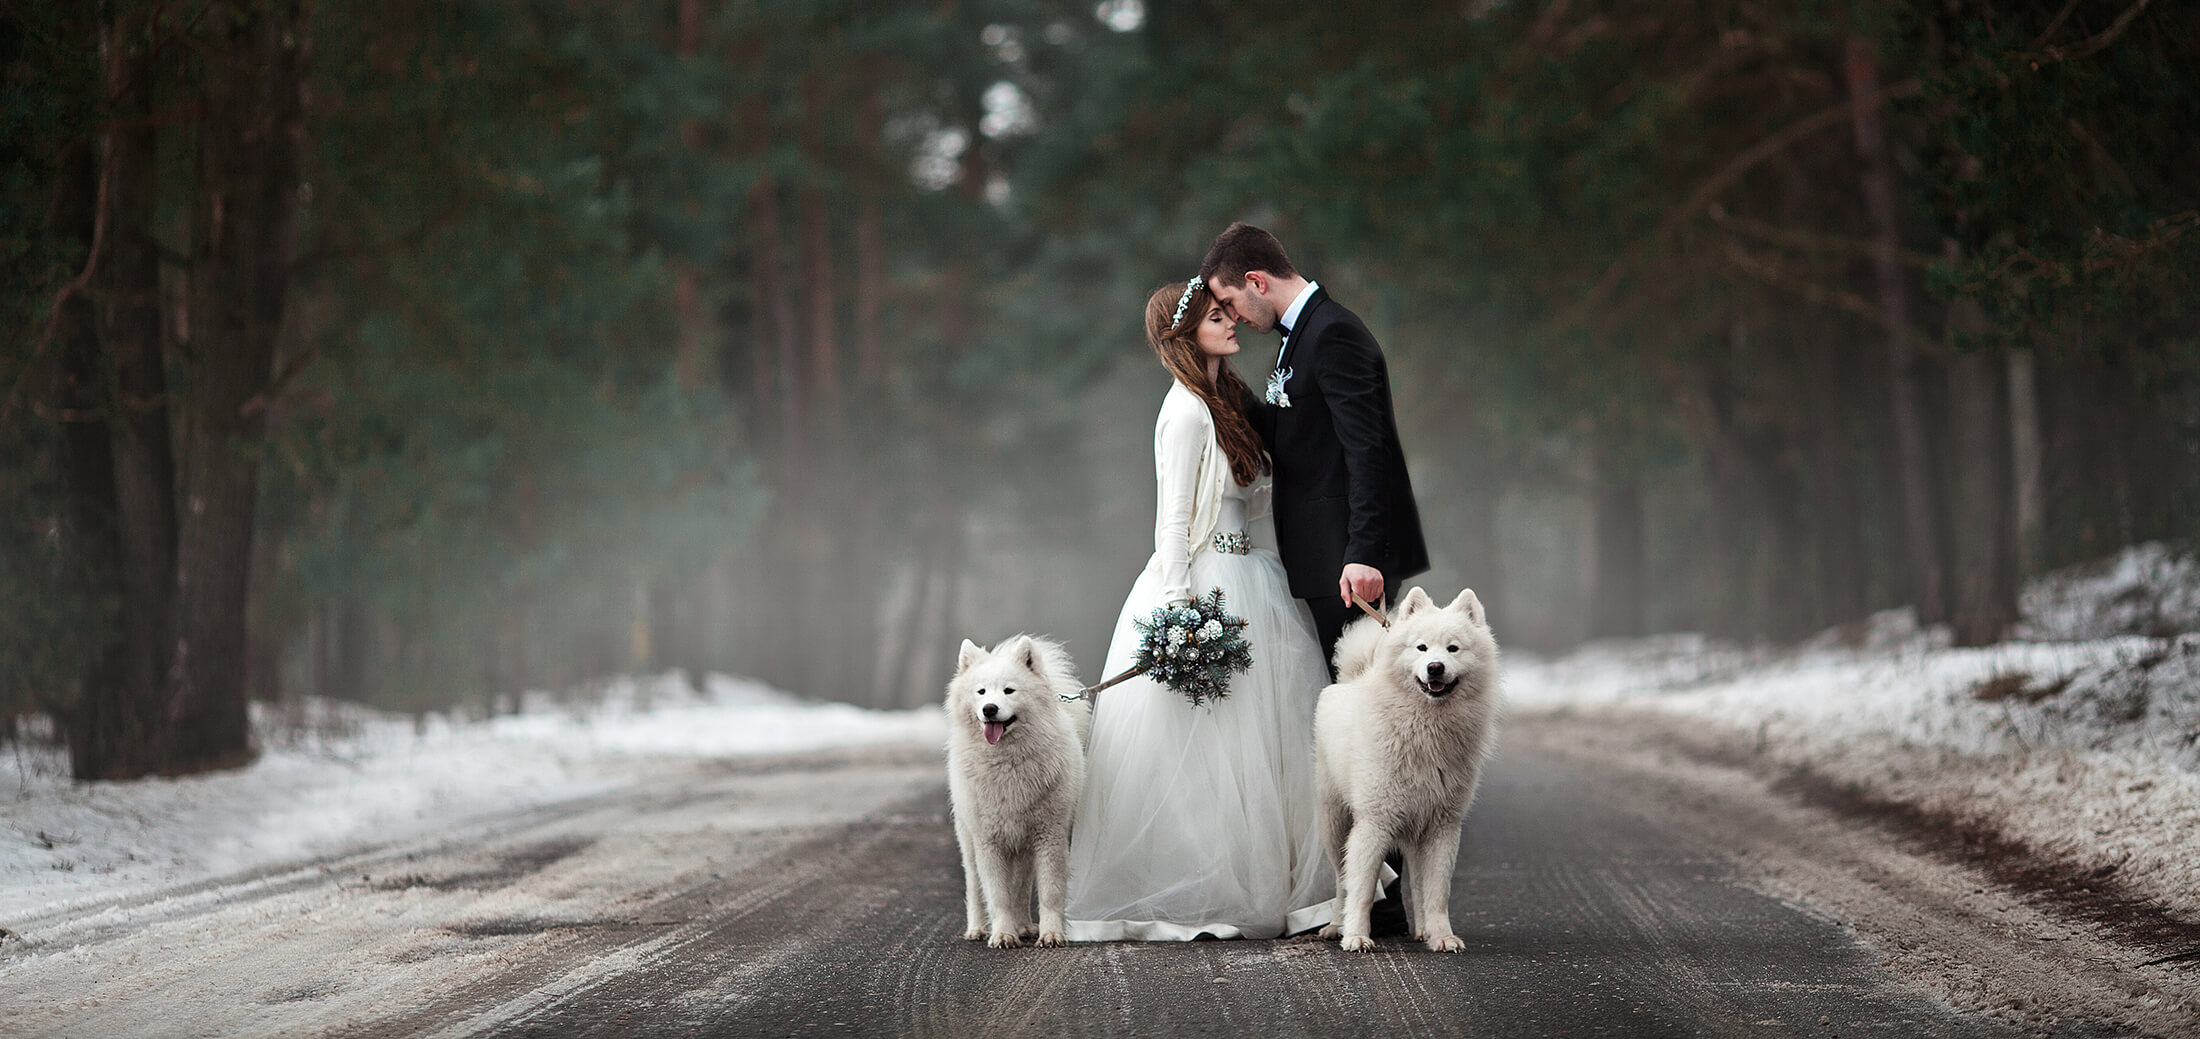 Как Создать Необычную Свадьбу: Животные на Фотосессии